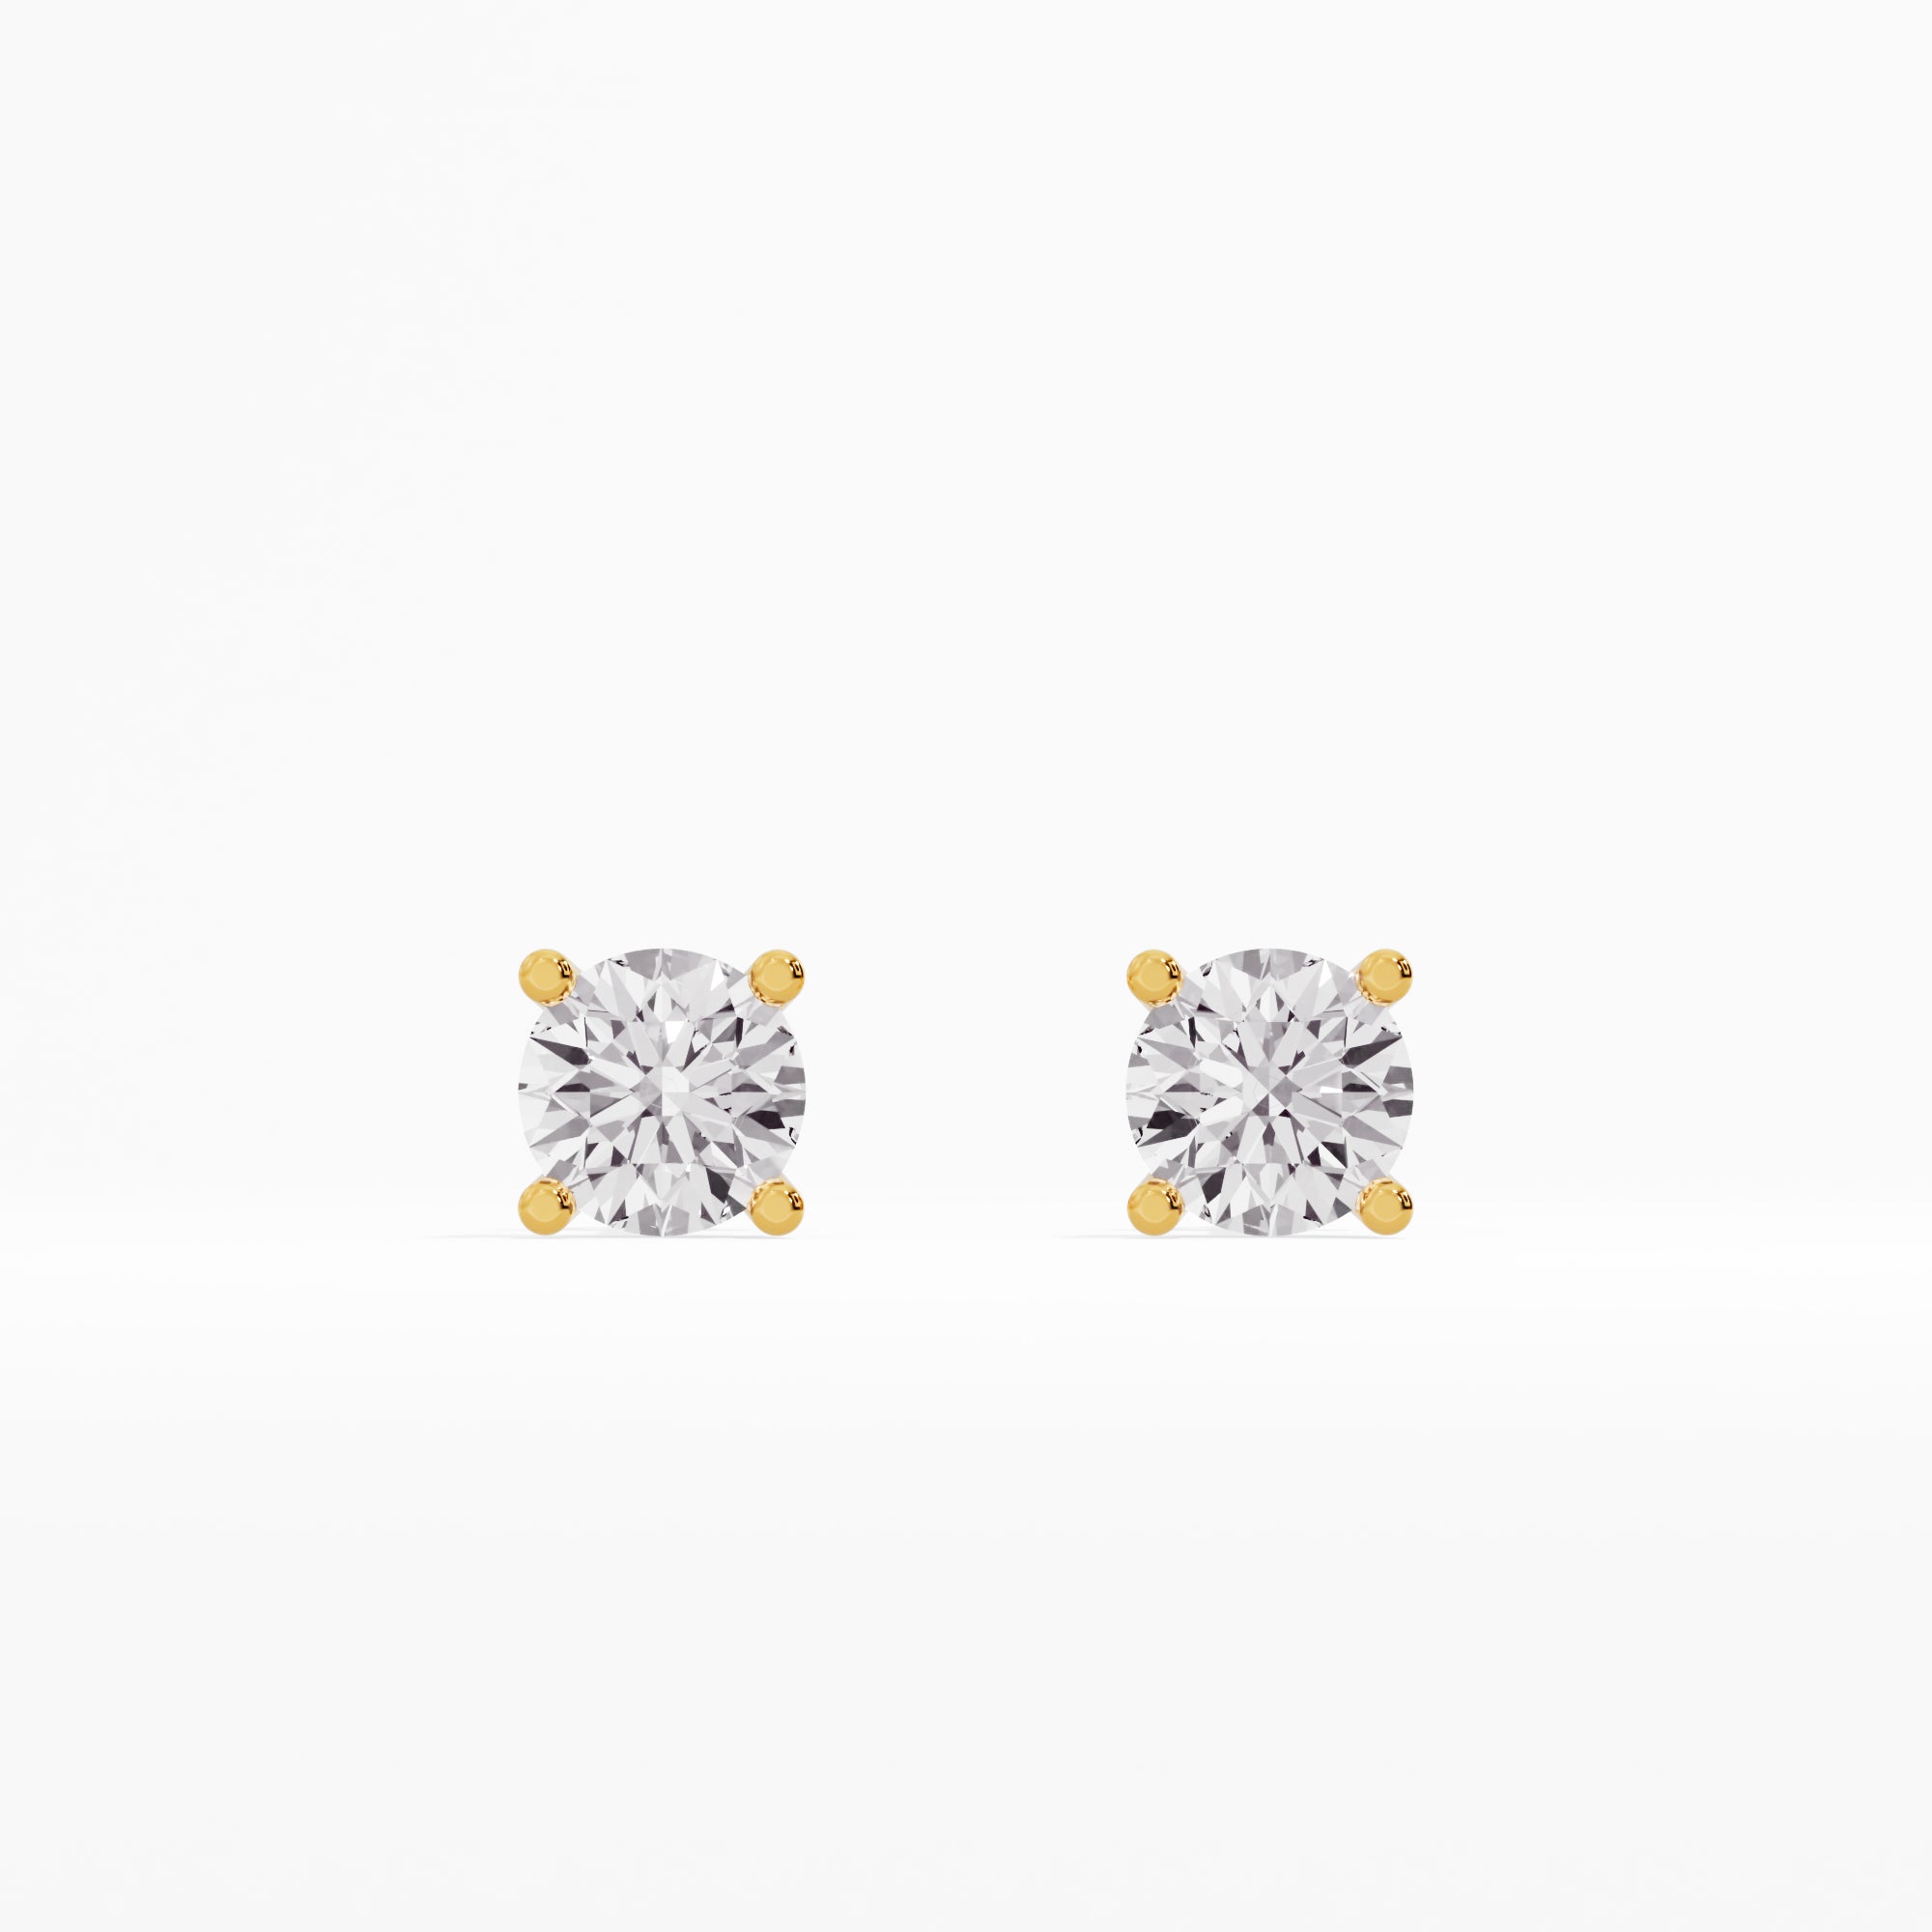 Regal Radiance Diamond Earrings